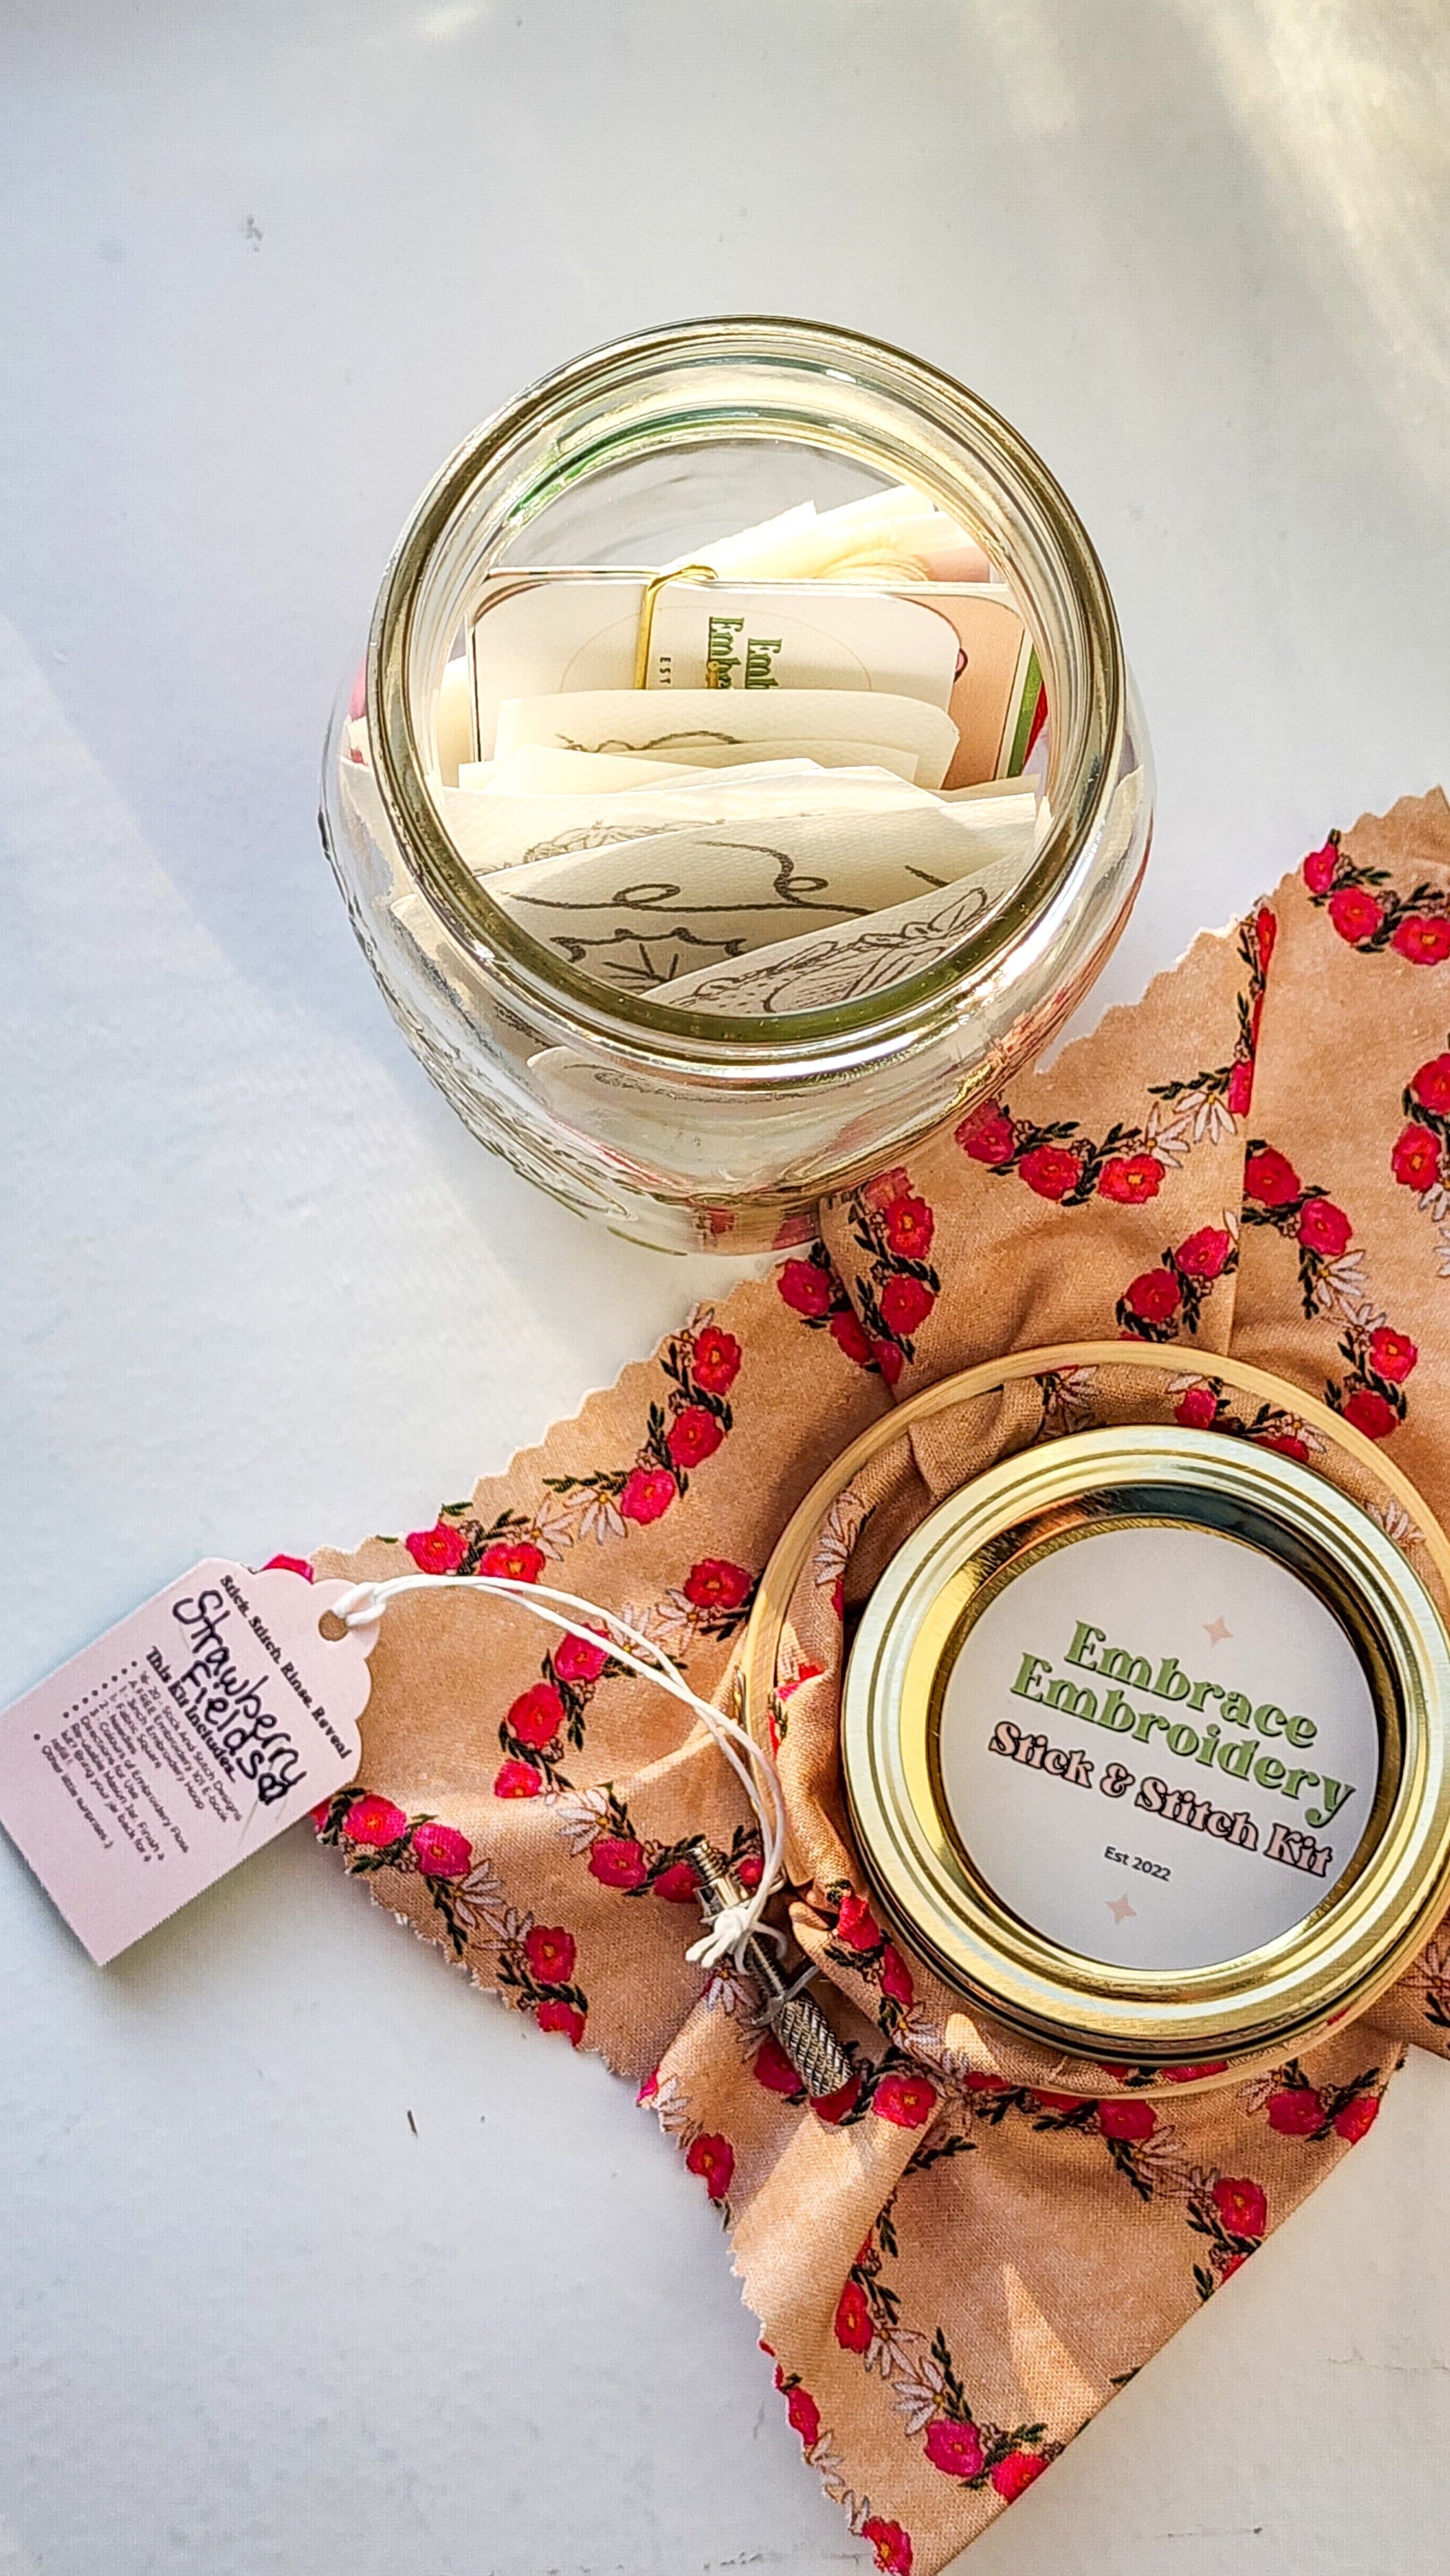 Embrace Embroidery Strawberry Fields Stick & Stitch Kit!